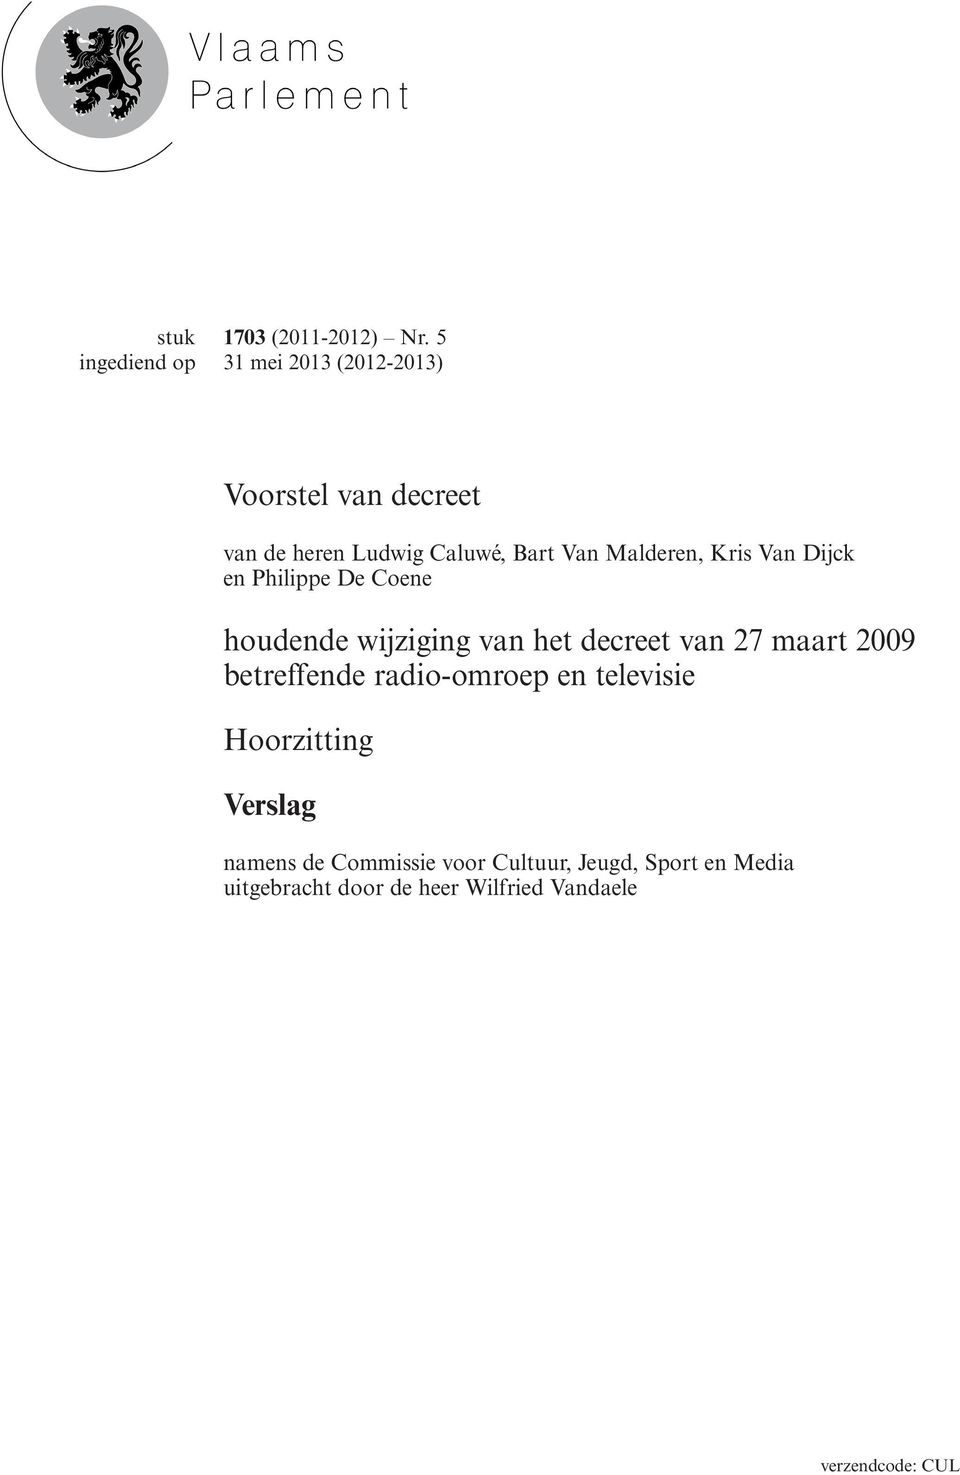 Van Dijck en Philippe De Coene houdende wijziging van het decreet van 27 maart 2009 betreffende